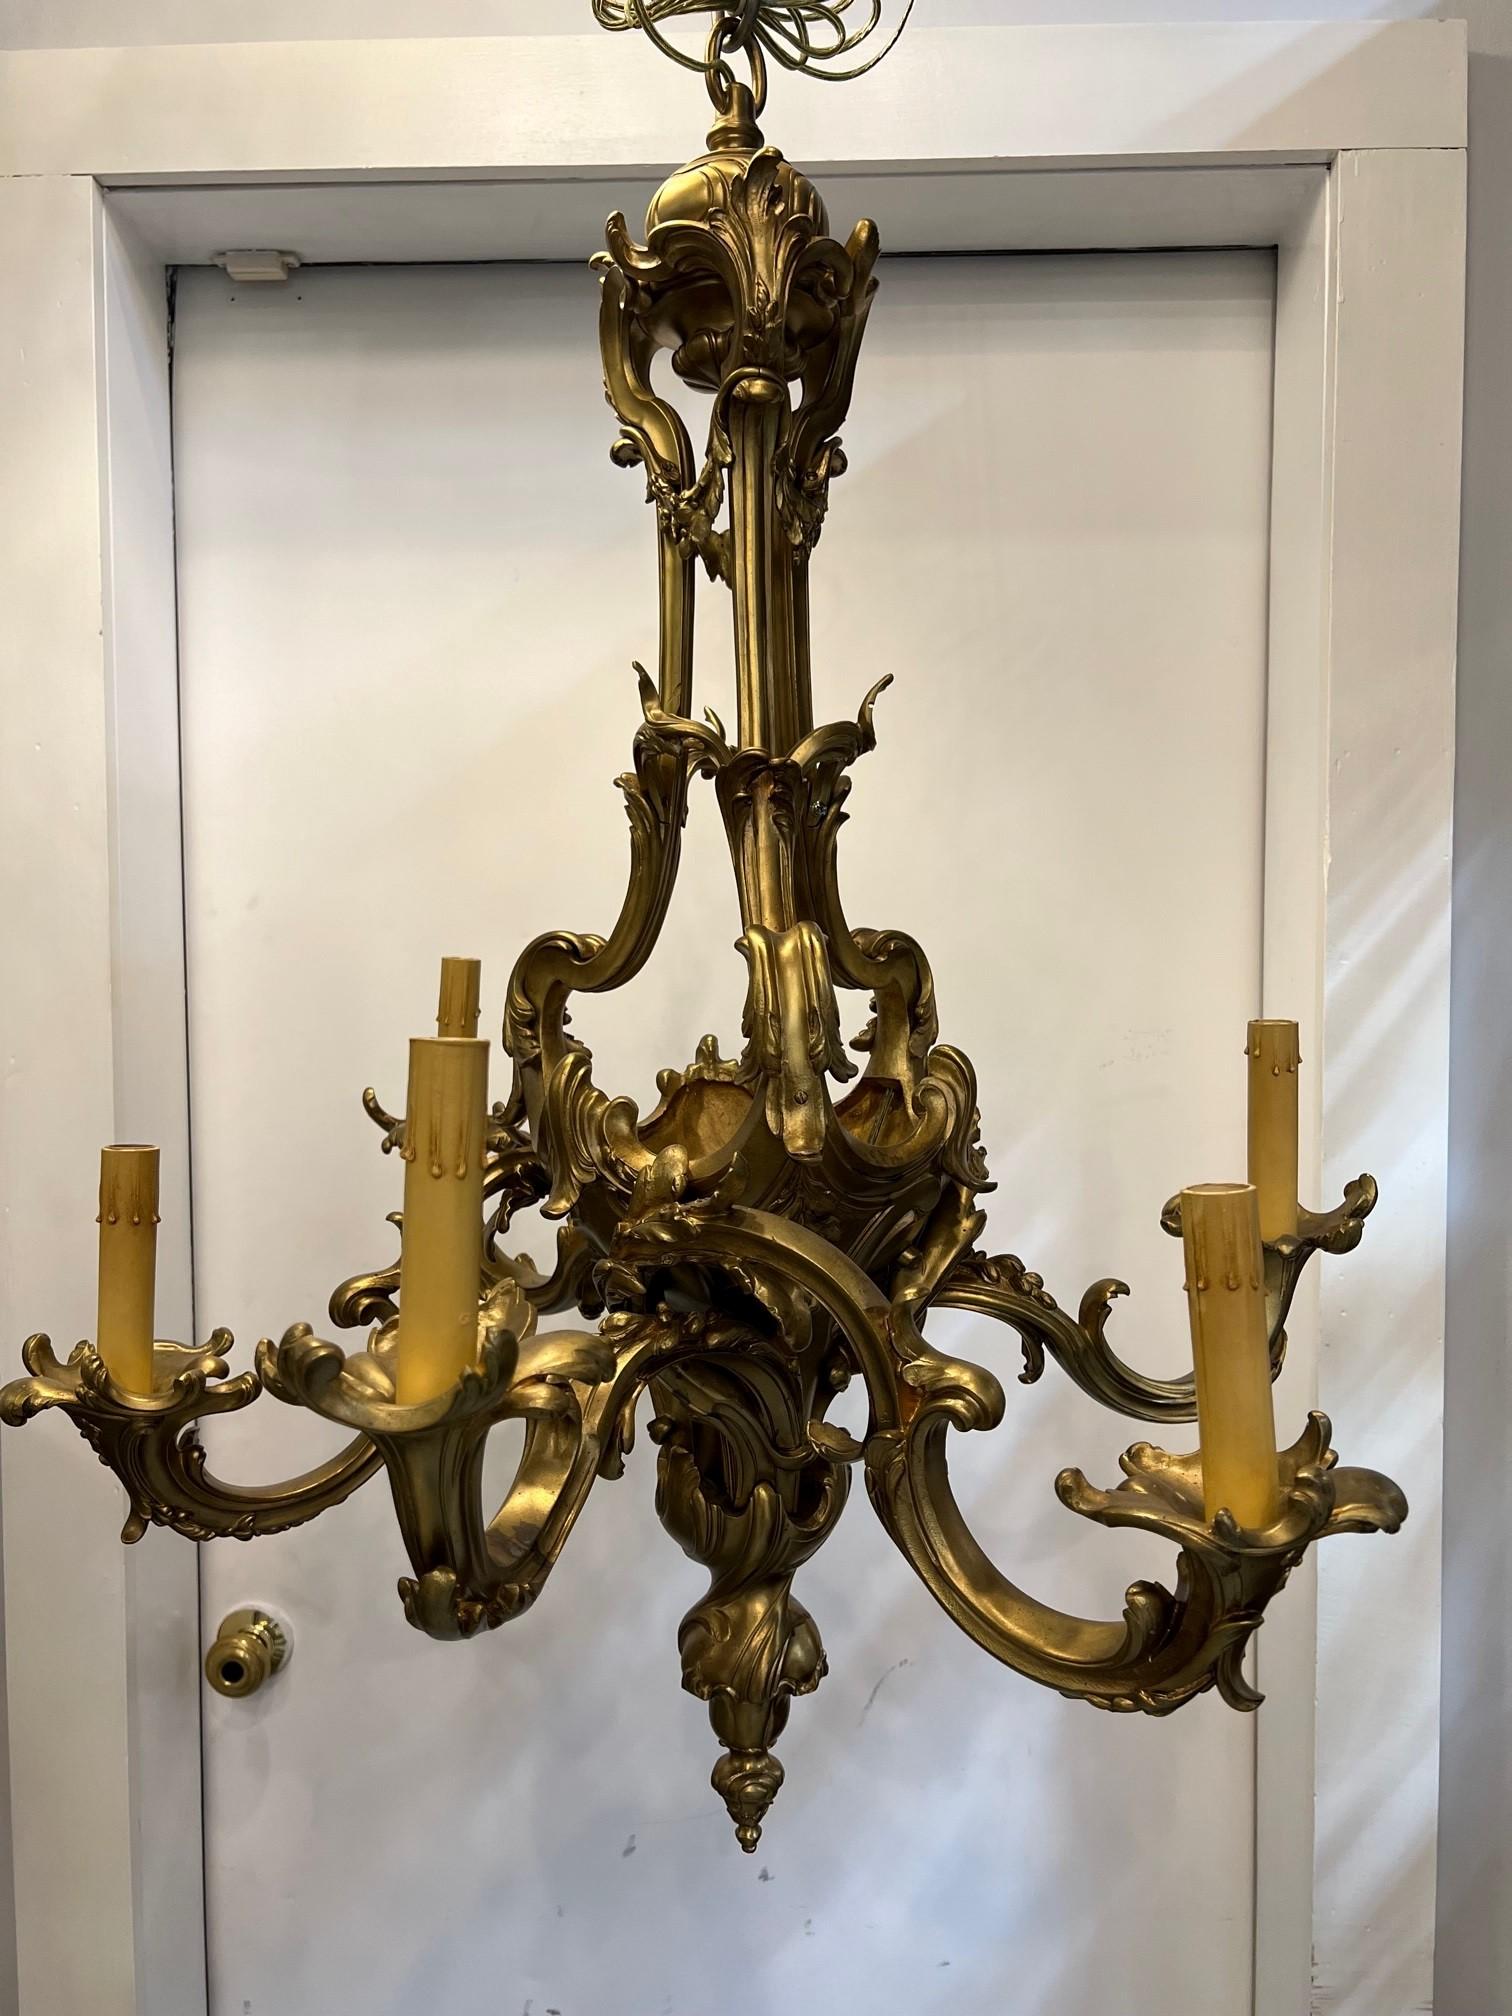 Lustre ancien en bronze de style Louis XV, d'influence rococo. Un gracieux lustre à cinq bras en bronze doré de style rococo français, récemment recâblé, provenant d'une propriété du comté de Westchester, à New York.  